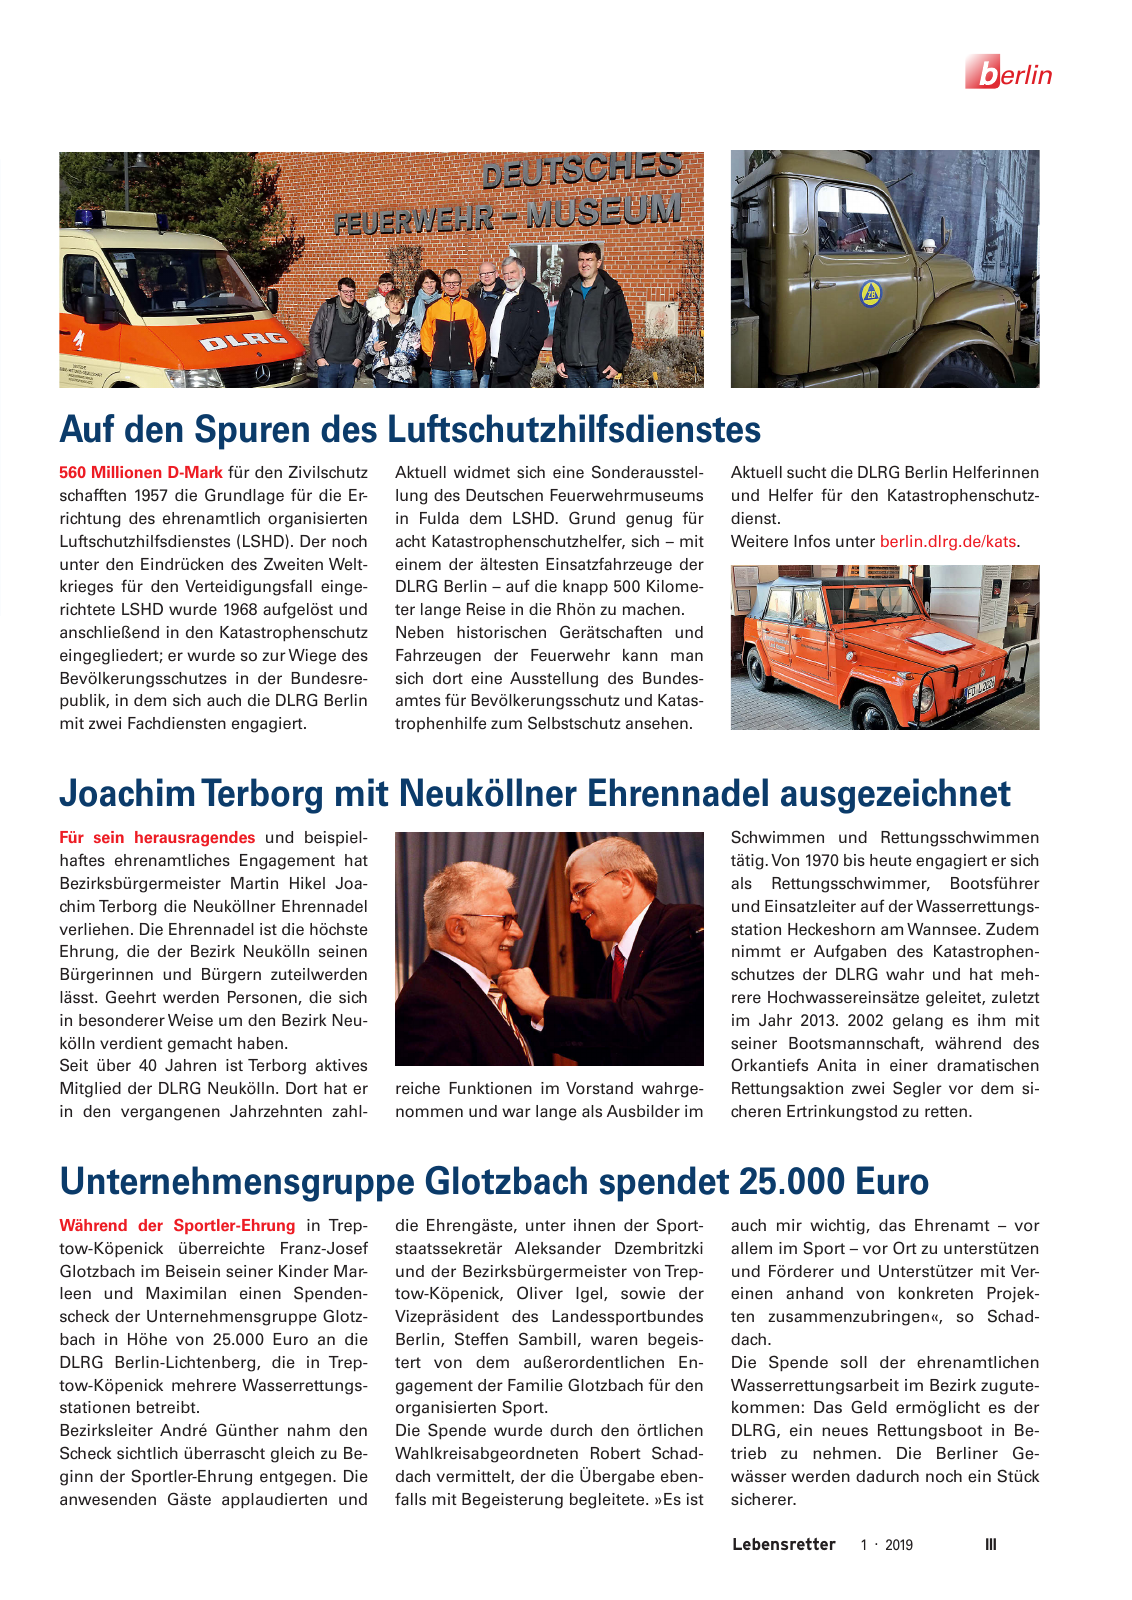 Vorschau Lebensretter 1/2019 –  Regionalausgabe Berlin Seite 5